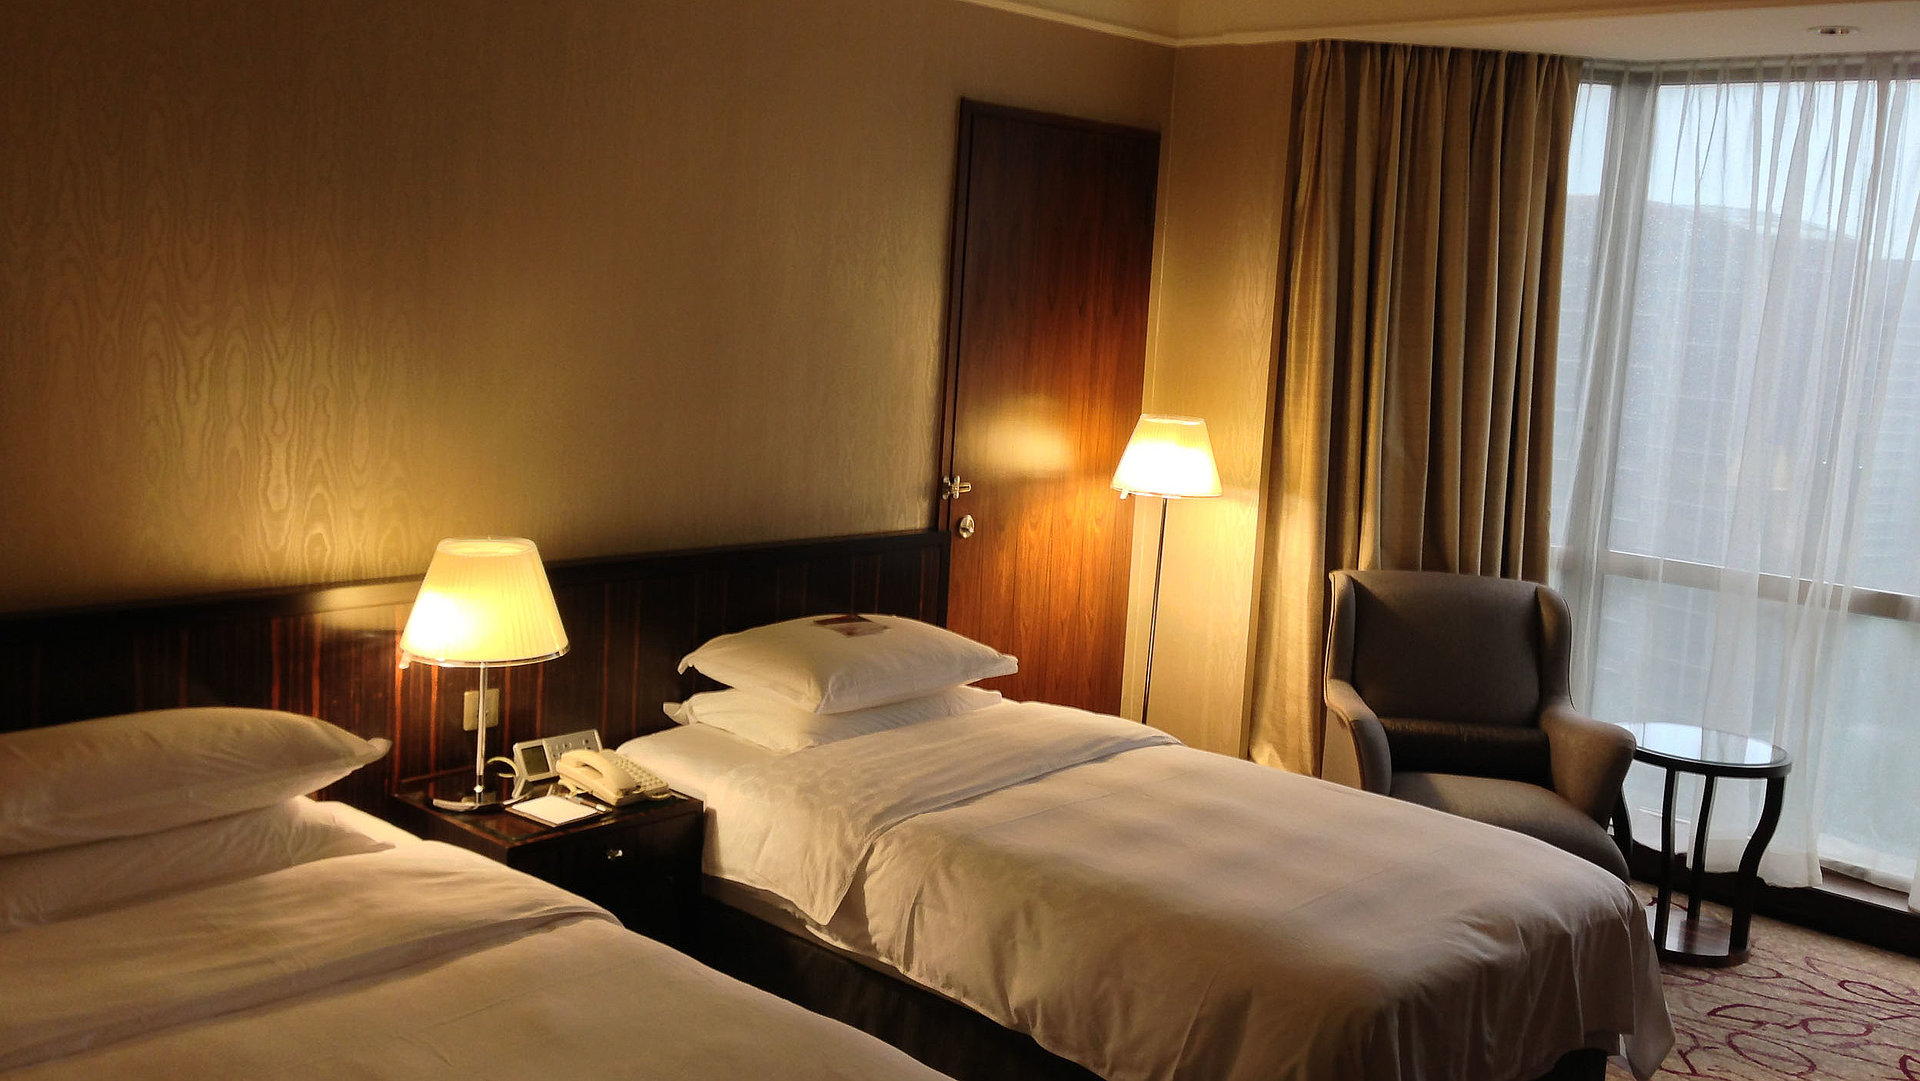 Pauschalen während der Woche in Franken - sehr ordentliches Hotelzimmer mit zwei Betten, warmer Nachtlampe und Gardinen 